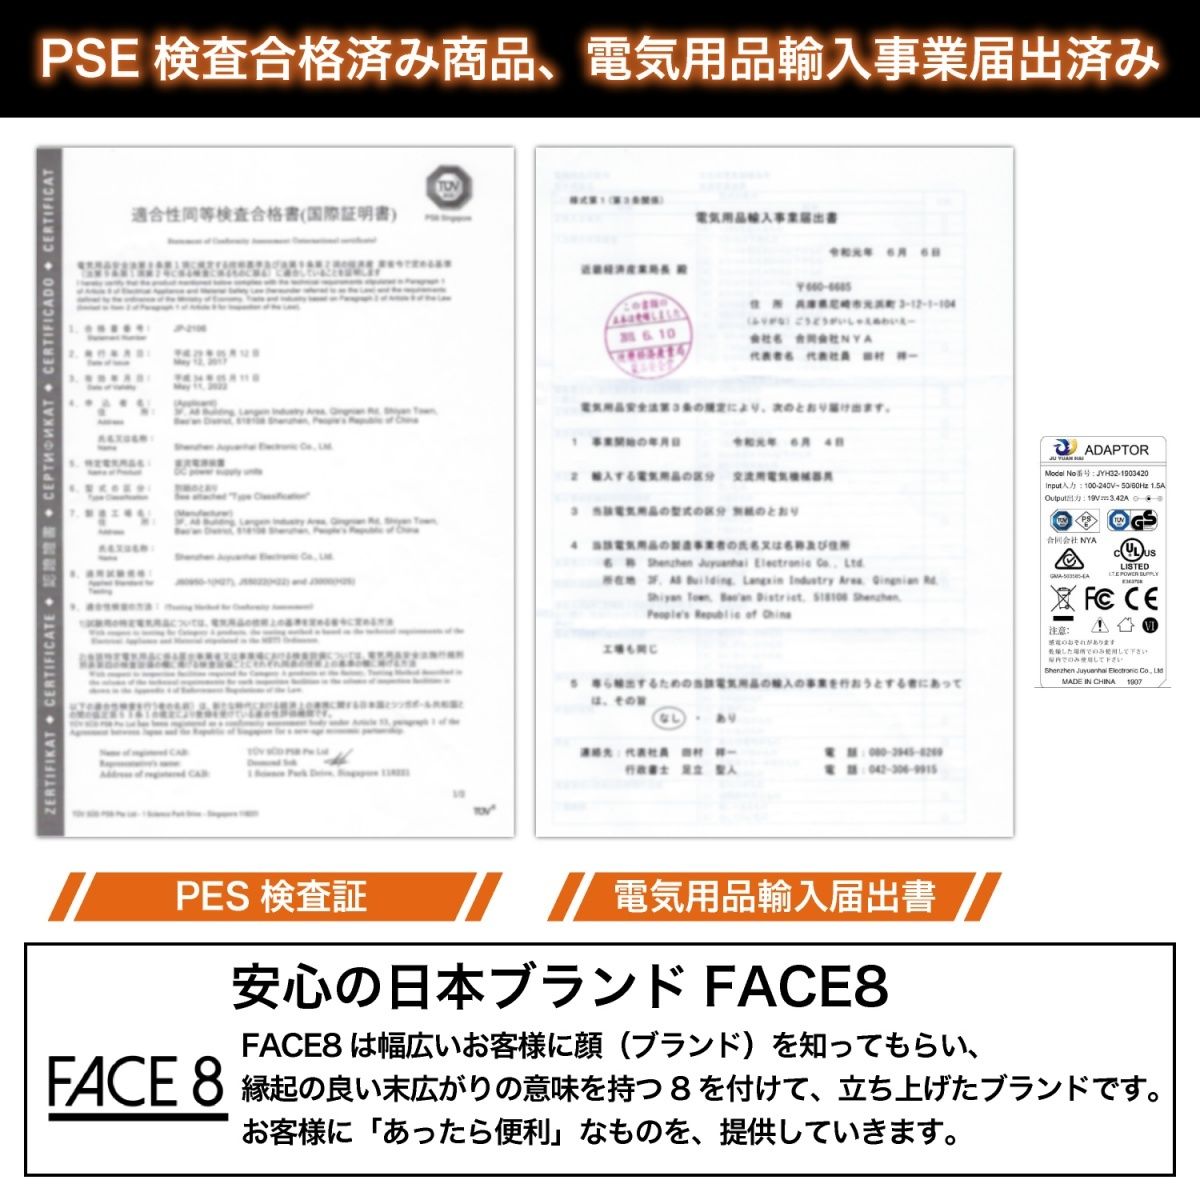 ポータブル電源 PG-1 | FACE8オンライン